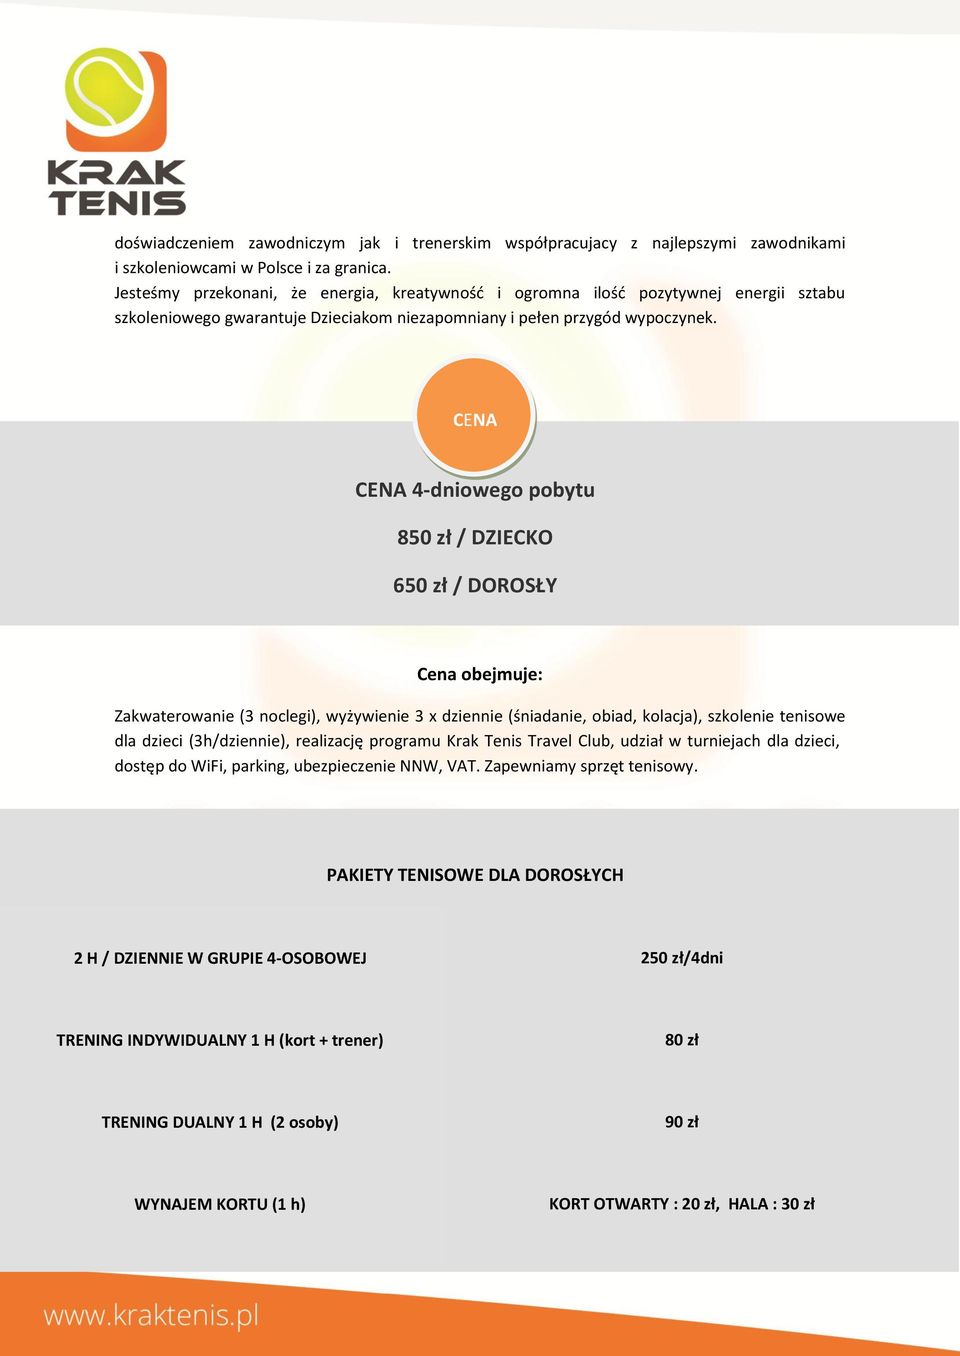 CENA CENA 4-dniowego pobytu 850 zł / DZIECKO 650 zł / DOROSŁY Cena obejmuje: Zakwaterowanie (3 noclegi), wyżywienie 3 x dziennie (śniadanie, obiad, kolacja), szkolenie tenisowe dla dzieci